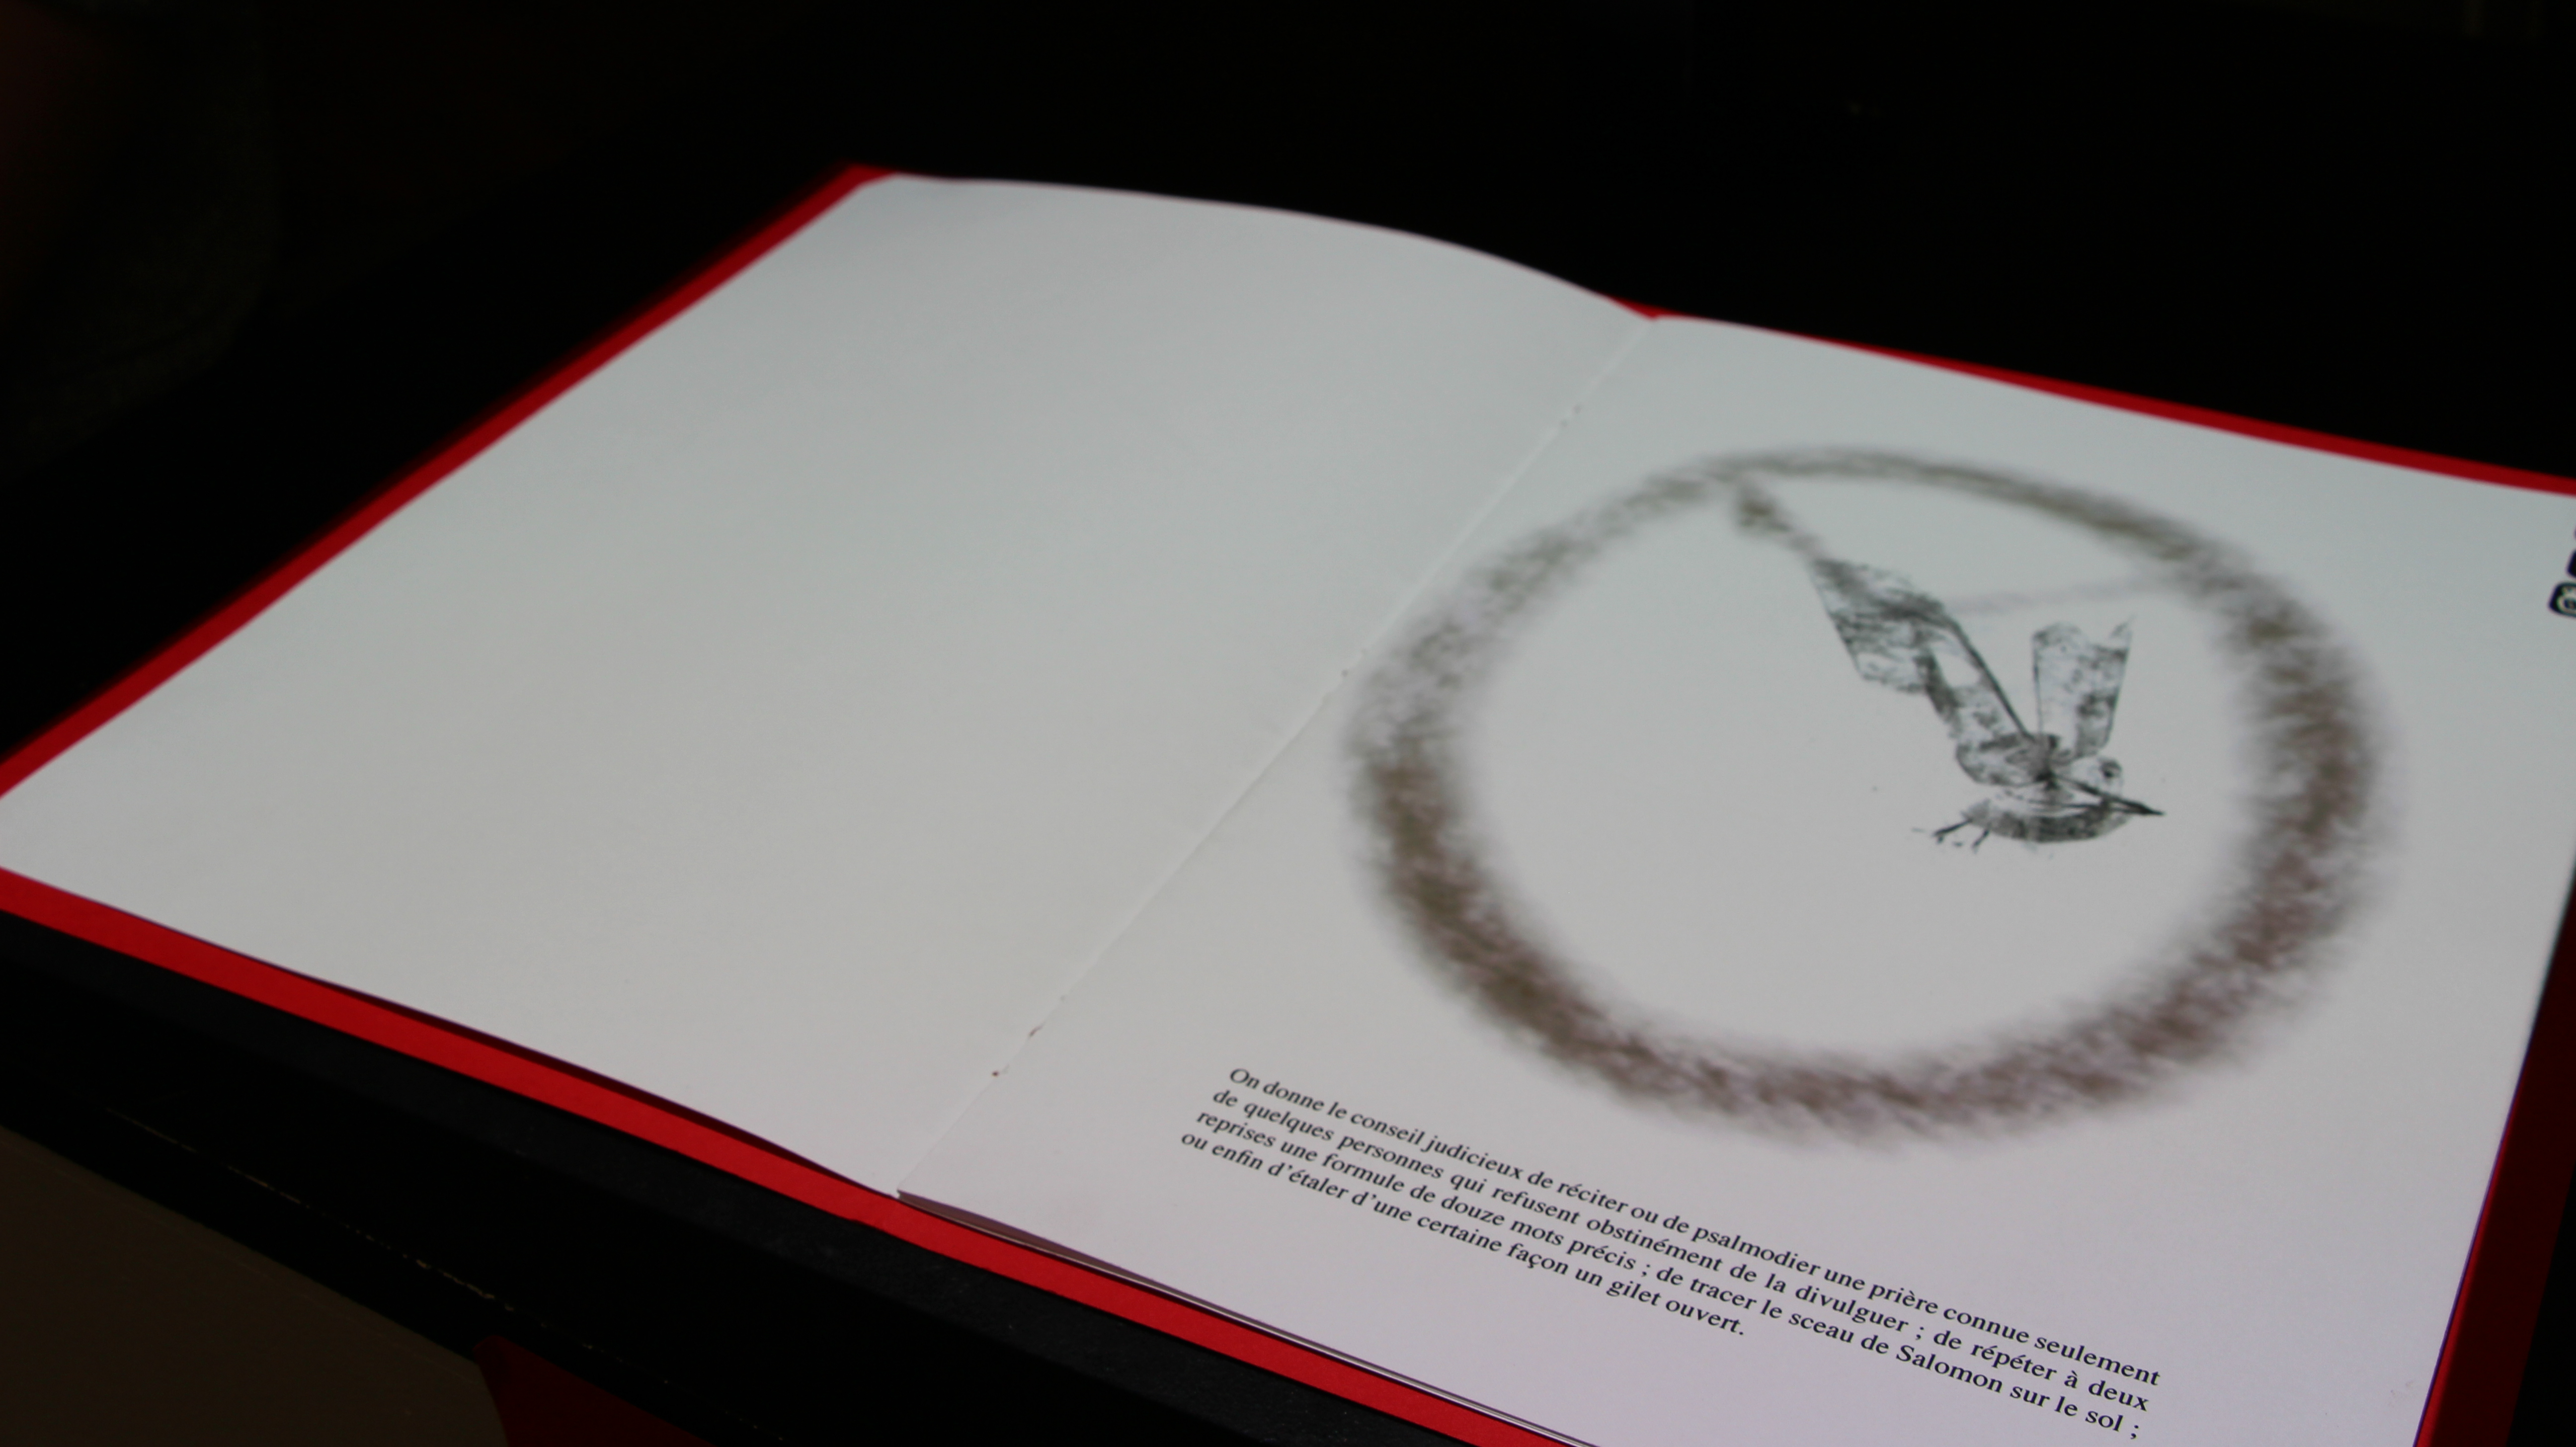 Le livre infini, co-production Art2M, présenté lors des portes ouvertes de l’école Estienne